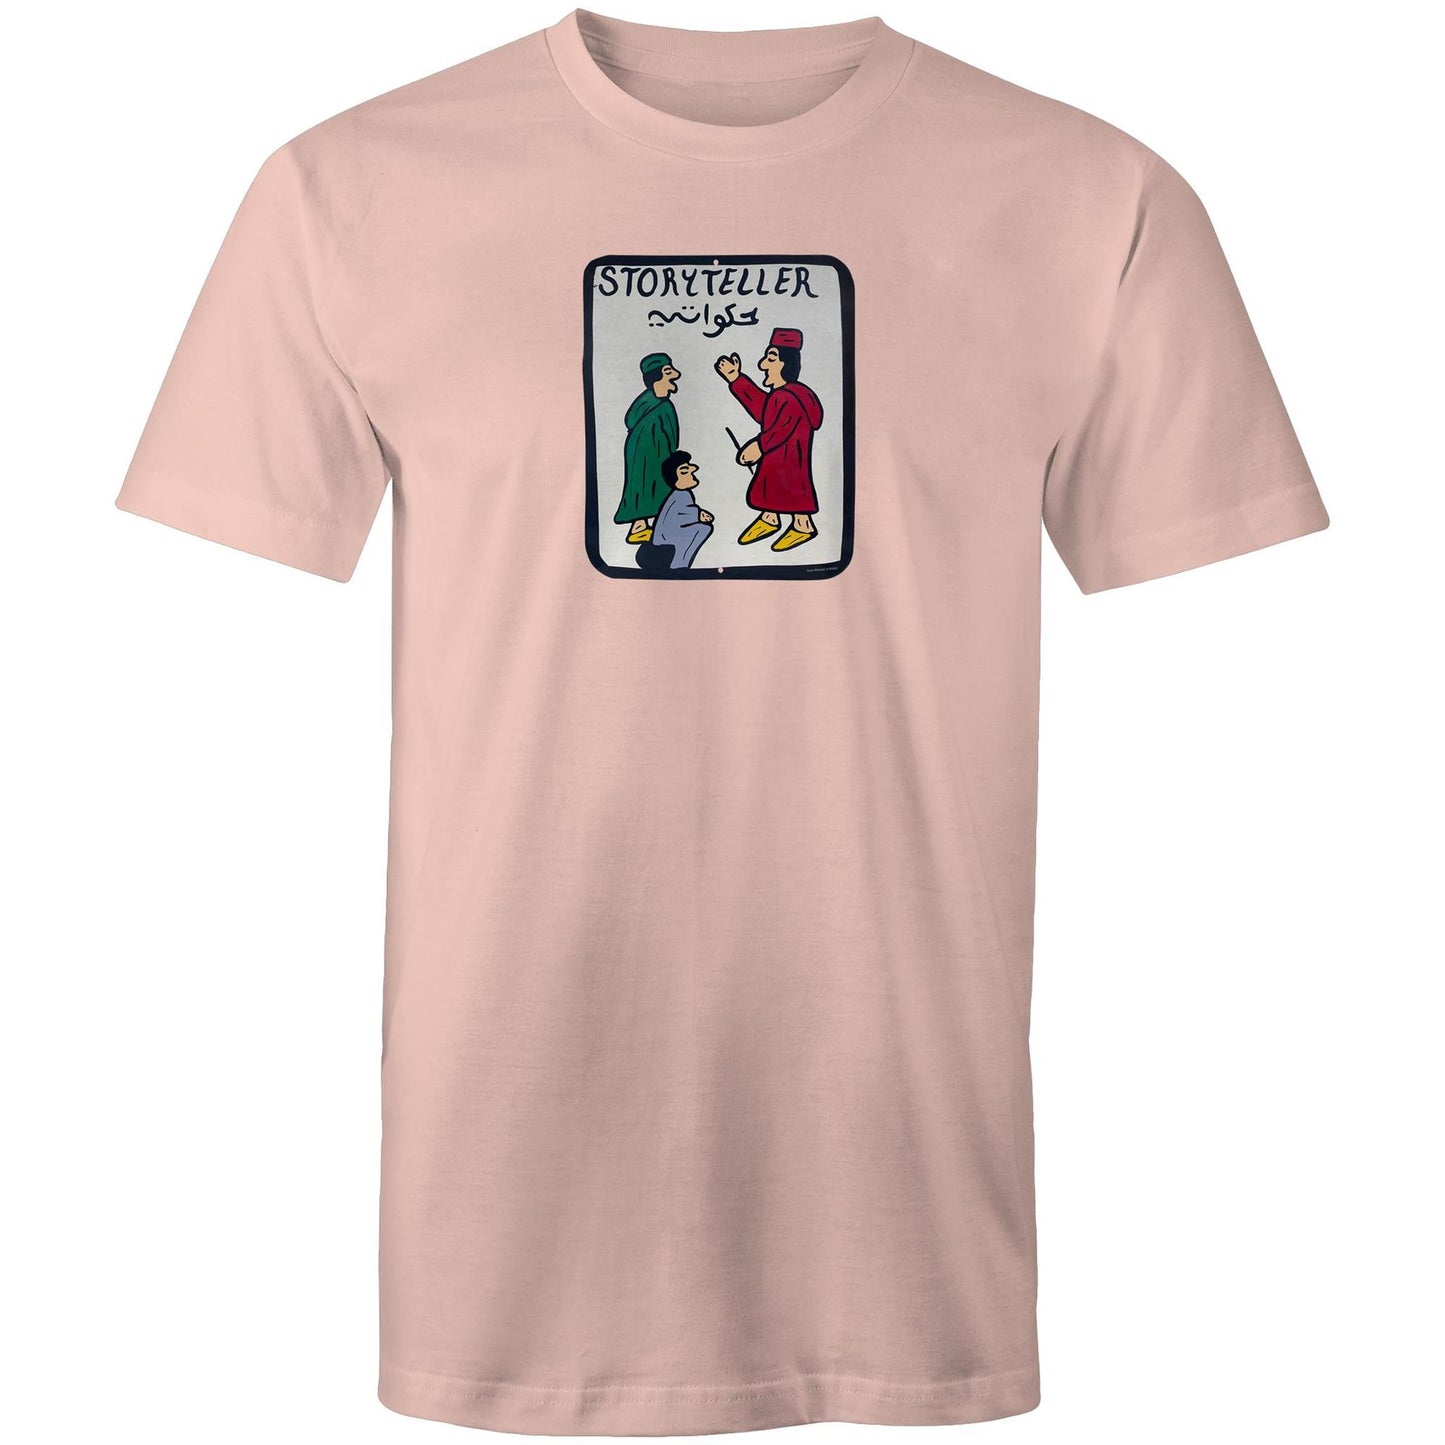 Storyteller T Shirts for Men (Unisex)